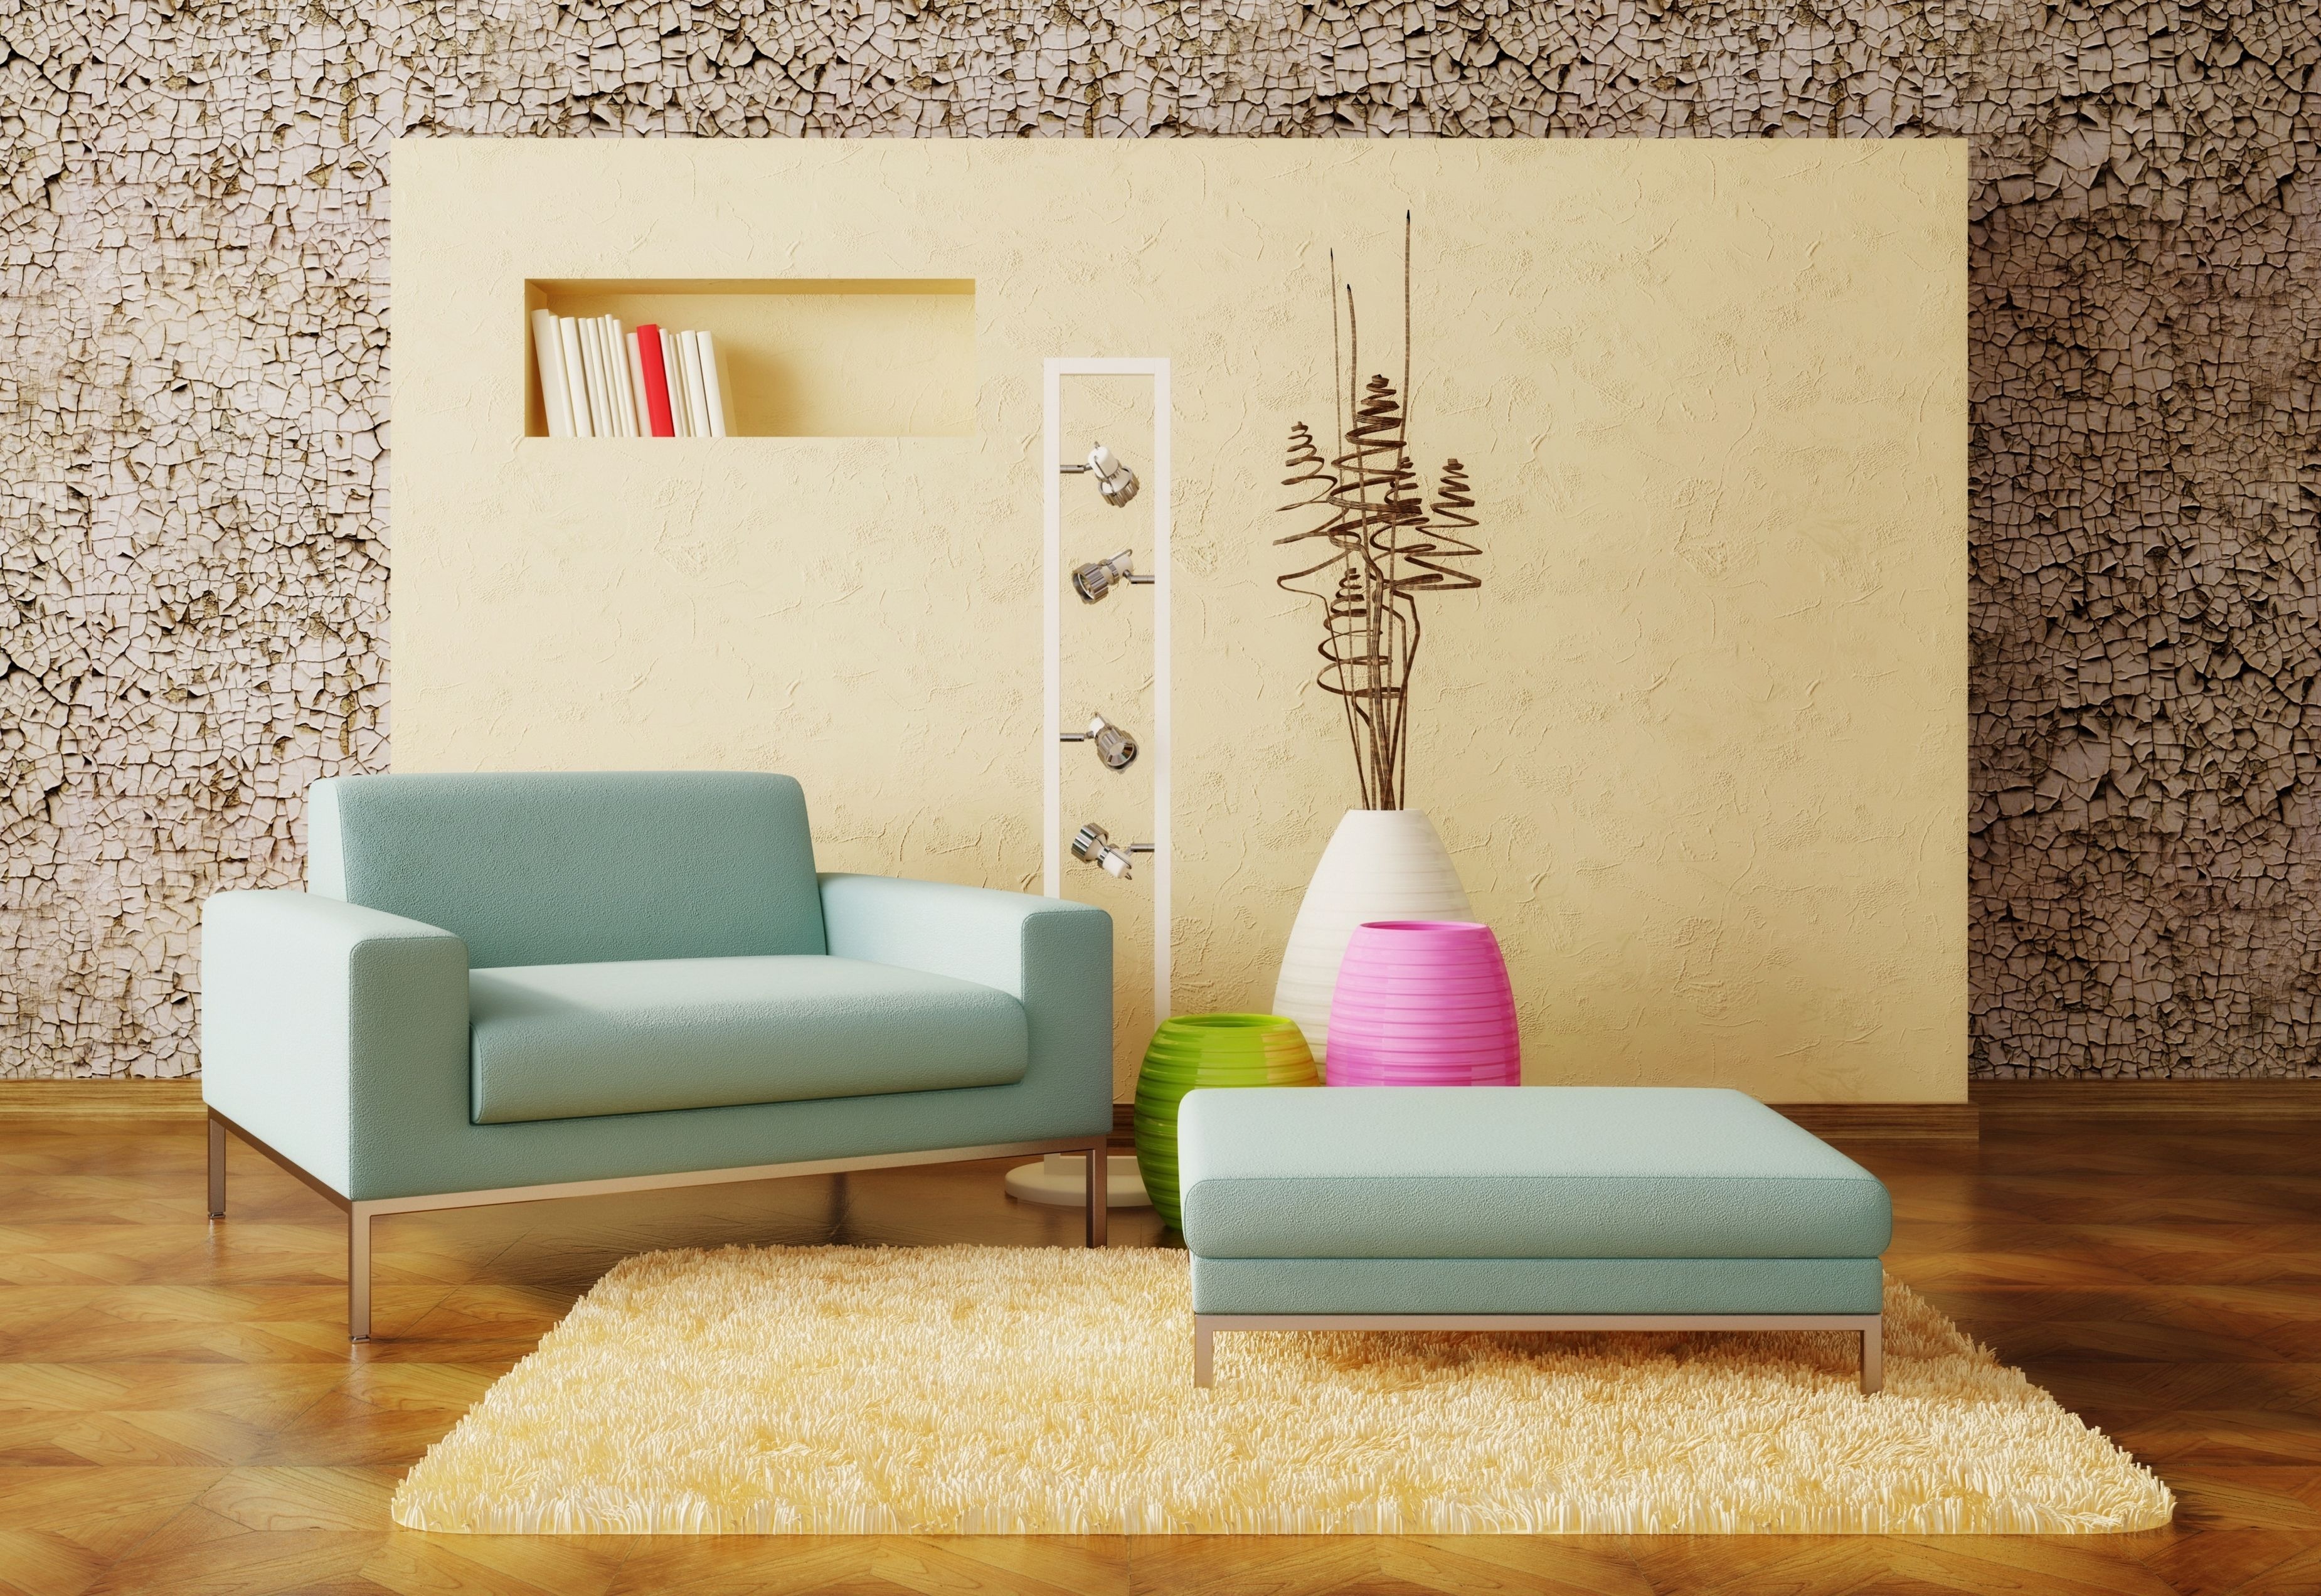 Image: Chair, lamps, vases, decor, carpet, walls, books